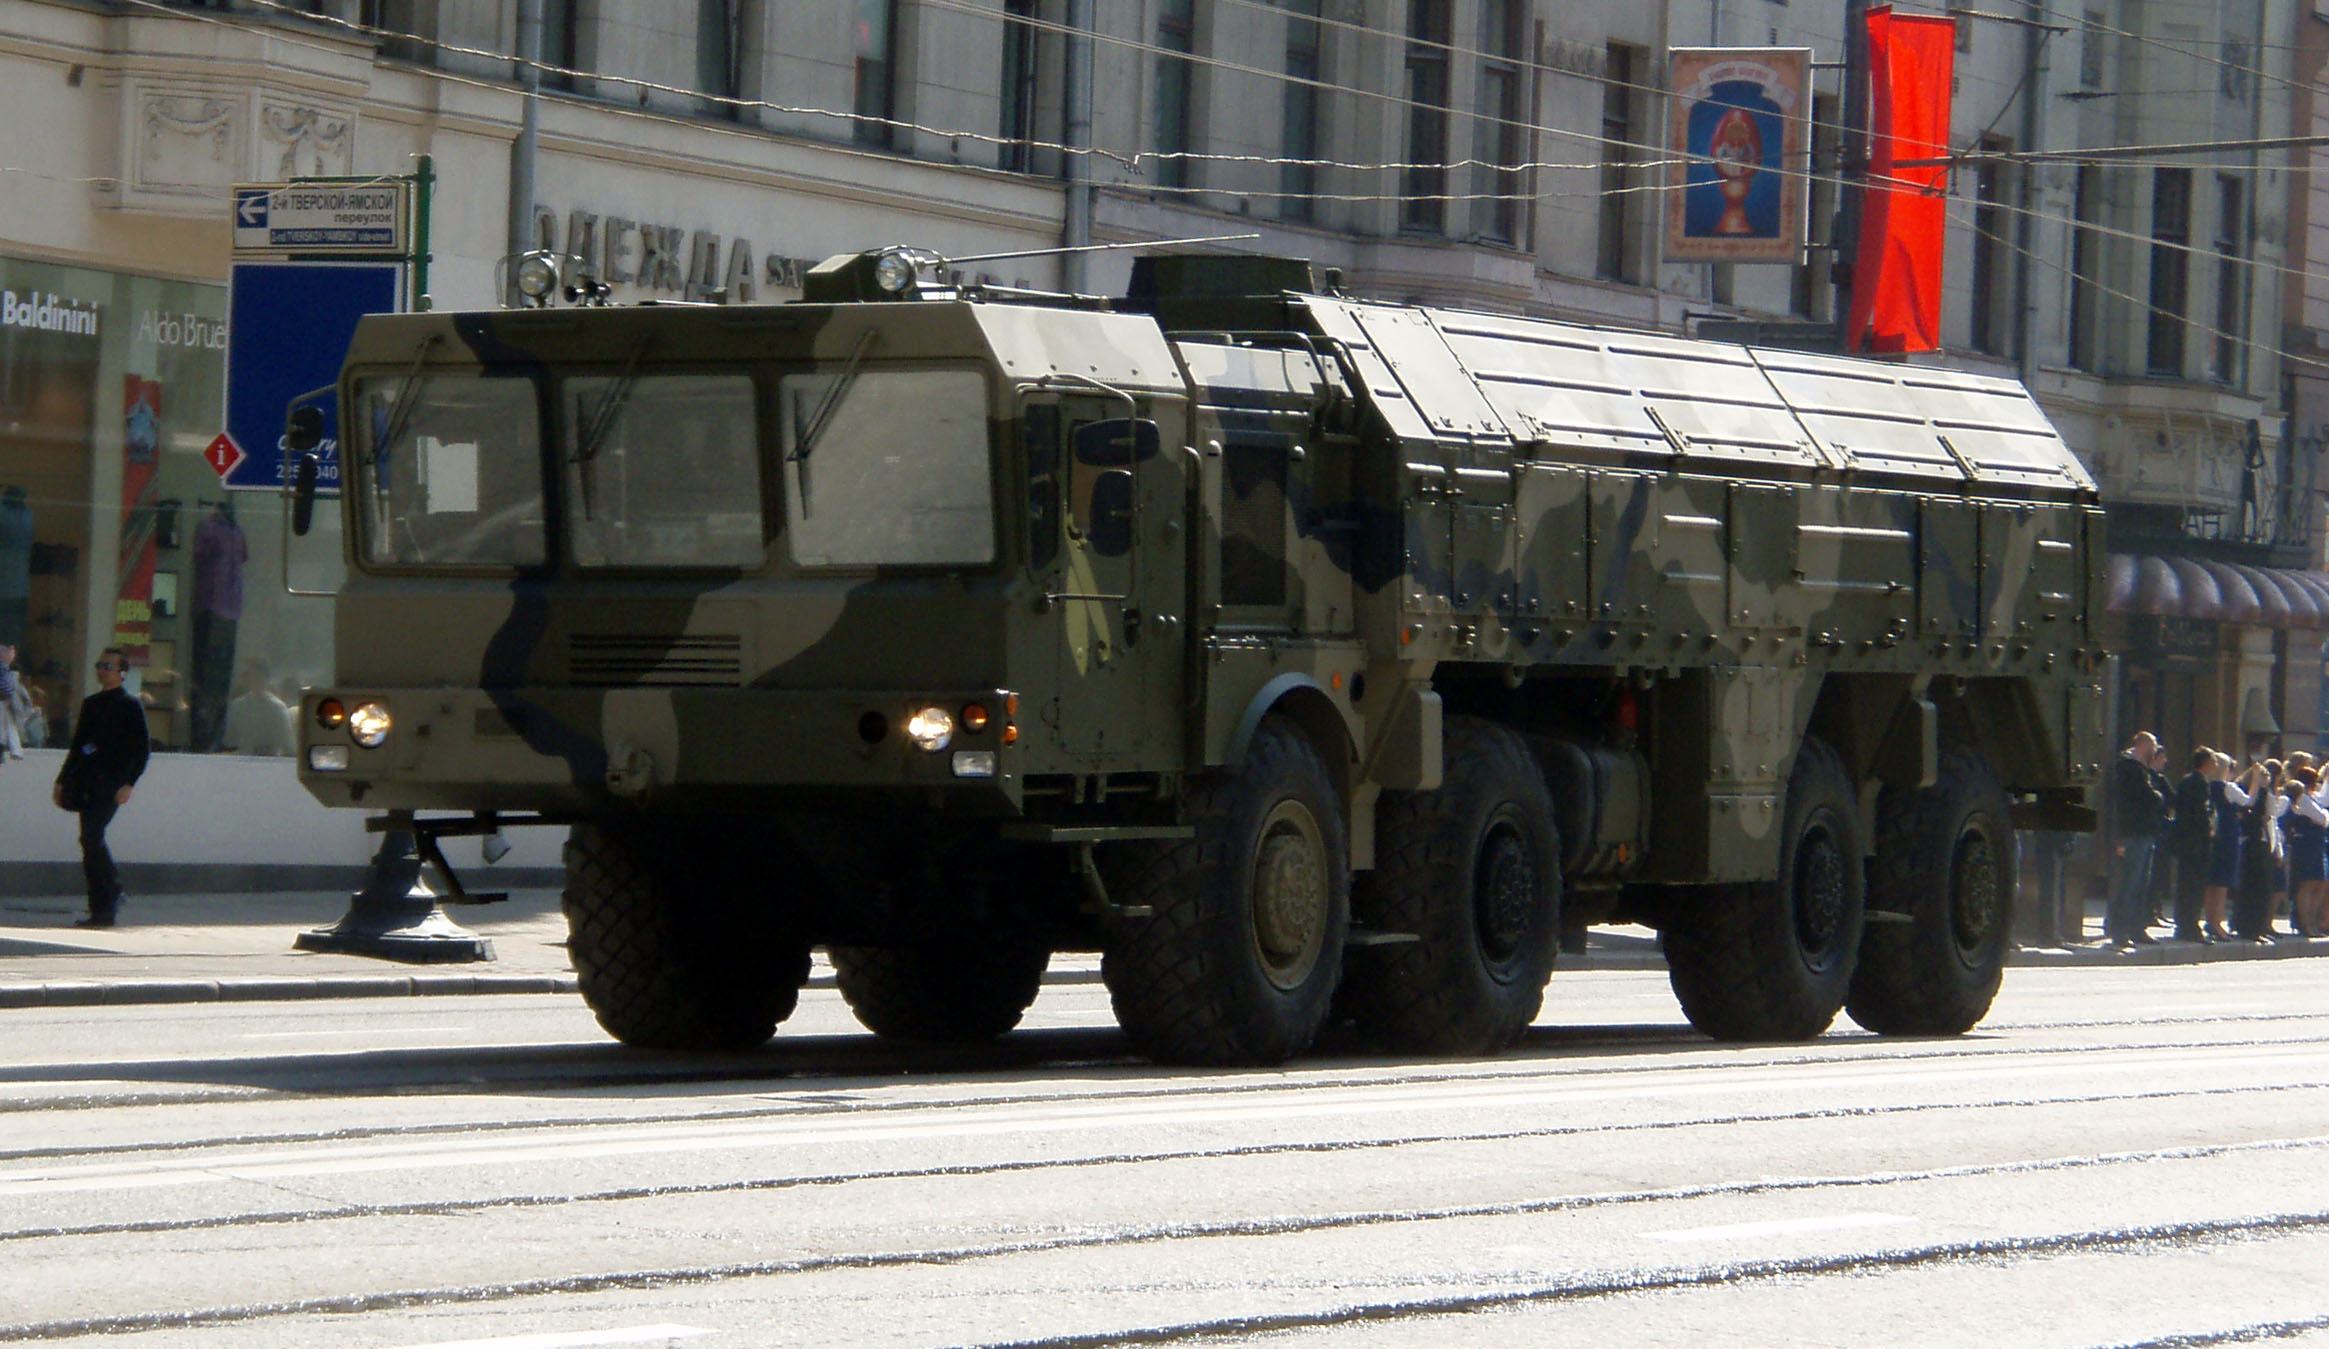 Системата ”Искандер М” (SS-26 Stone) вече е представяна на военни паради в Русия